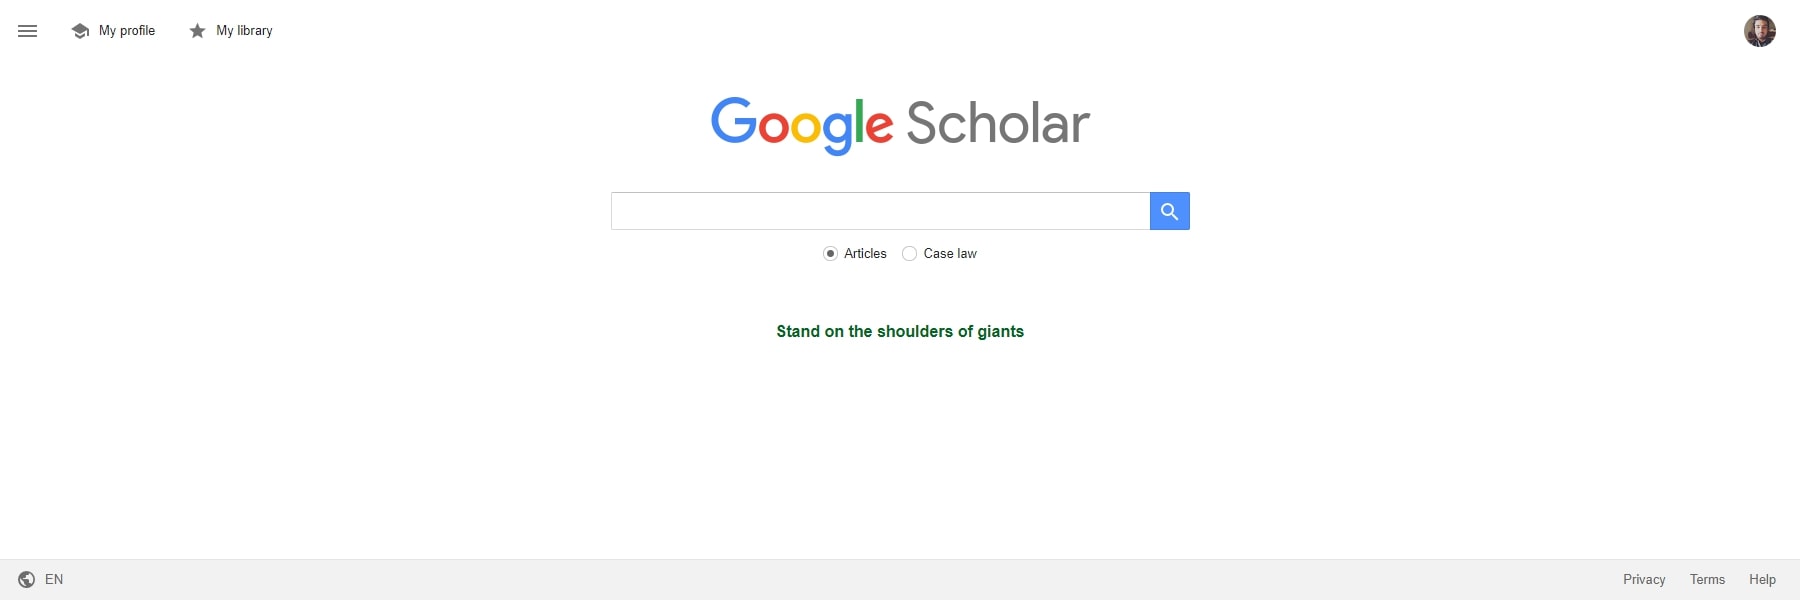 أدوات Google Scholar AI للتعليم